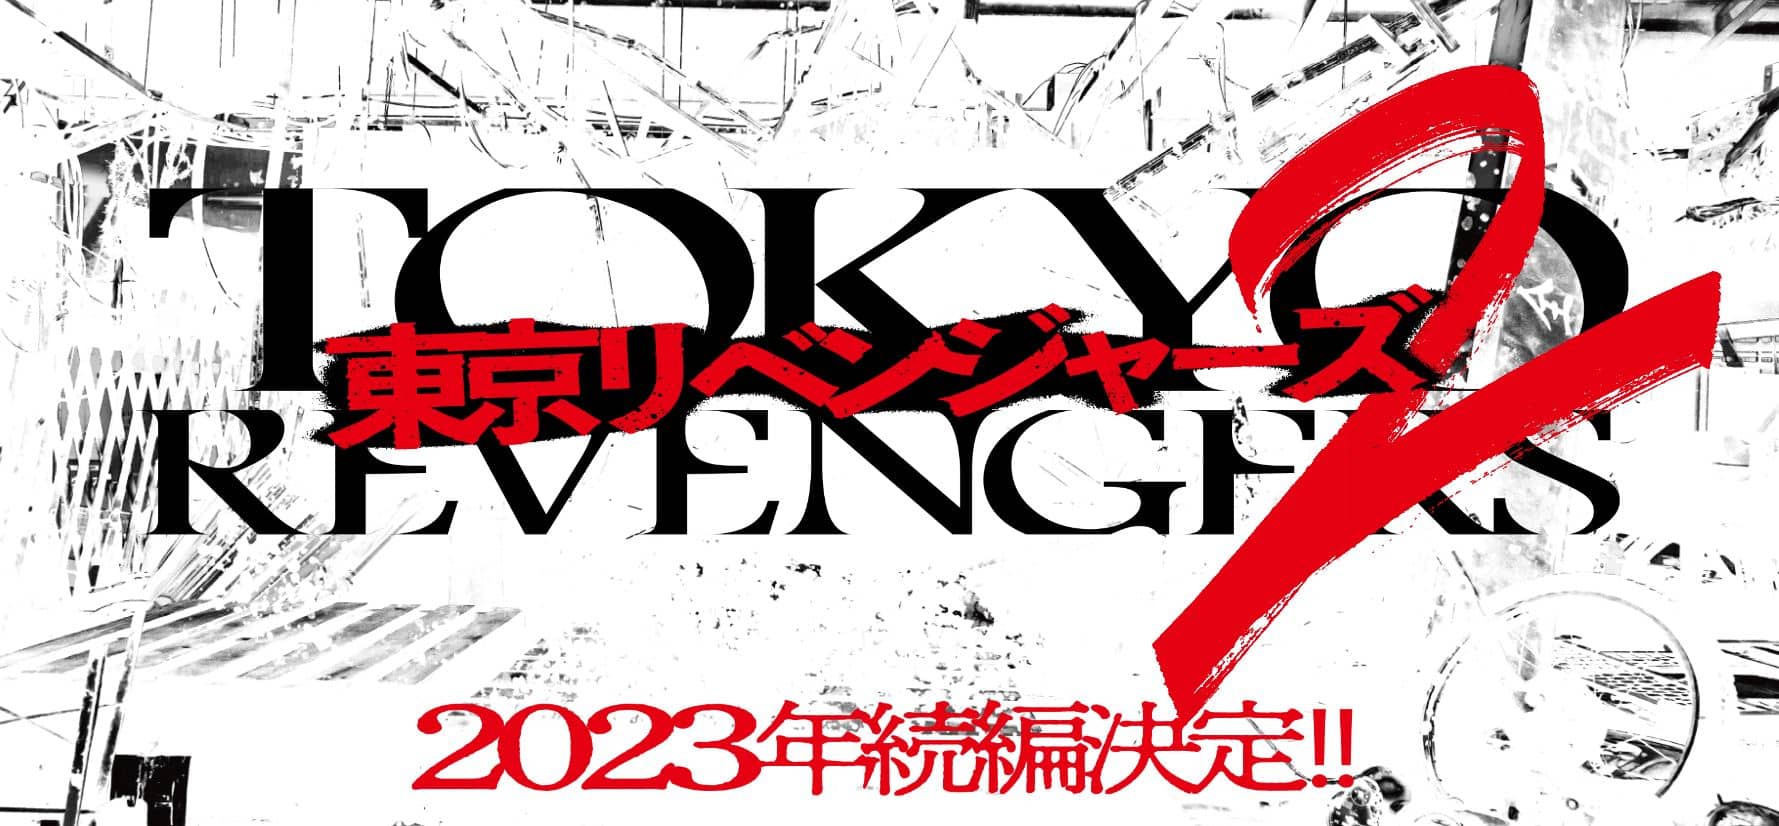 Tokyo Revengers: 2° filme em live-action é anunciado para 2023 – ANMTV